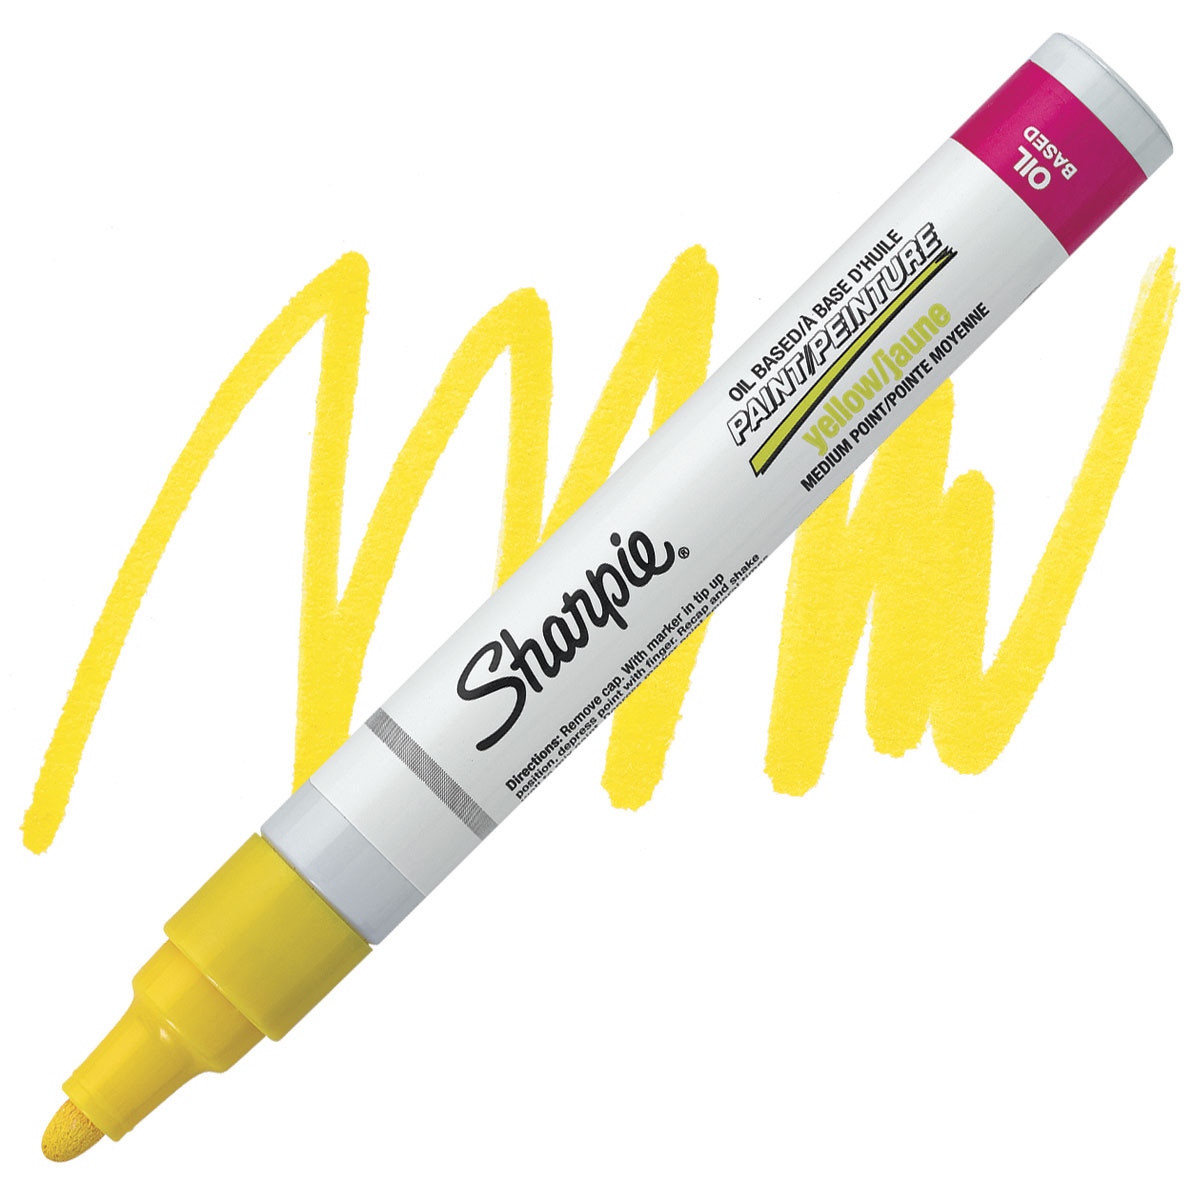 Sharpie Oil-Based Paint Marker - White, Medium Point, Pkg of 2